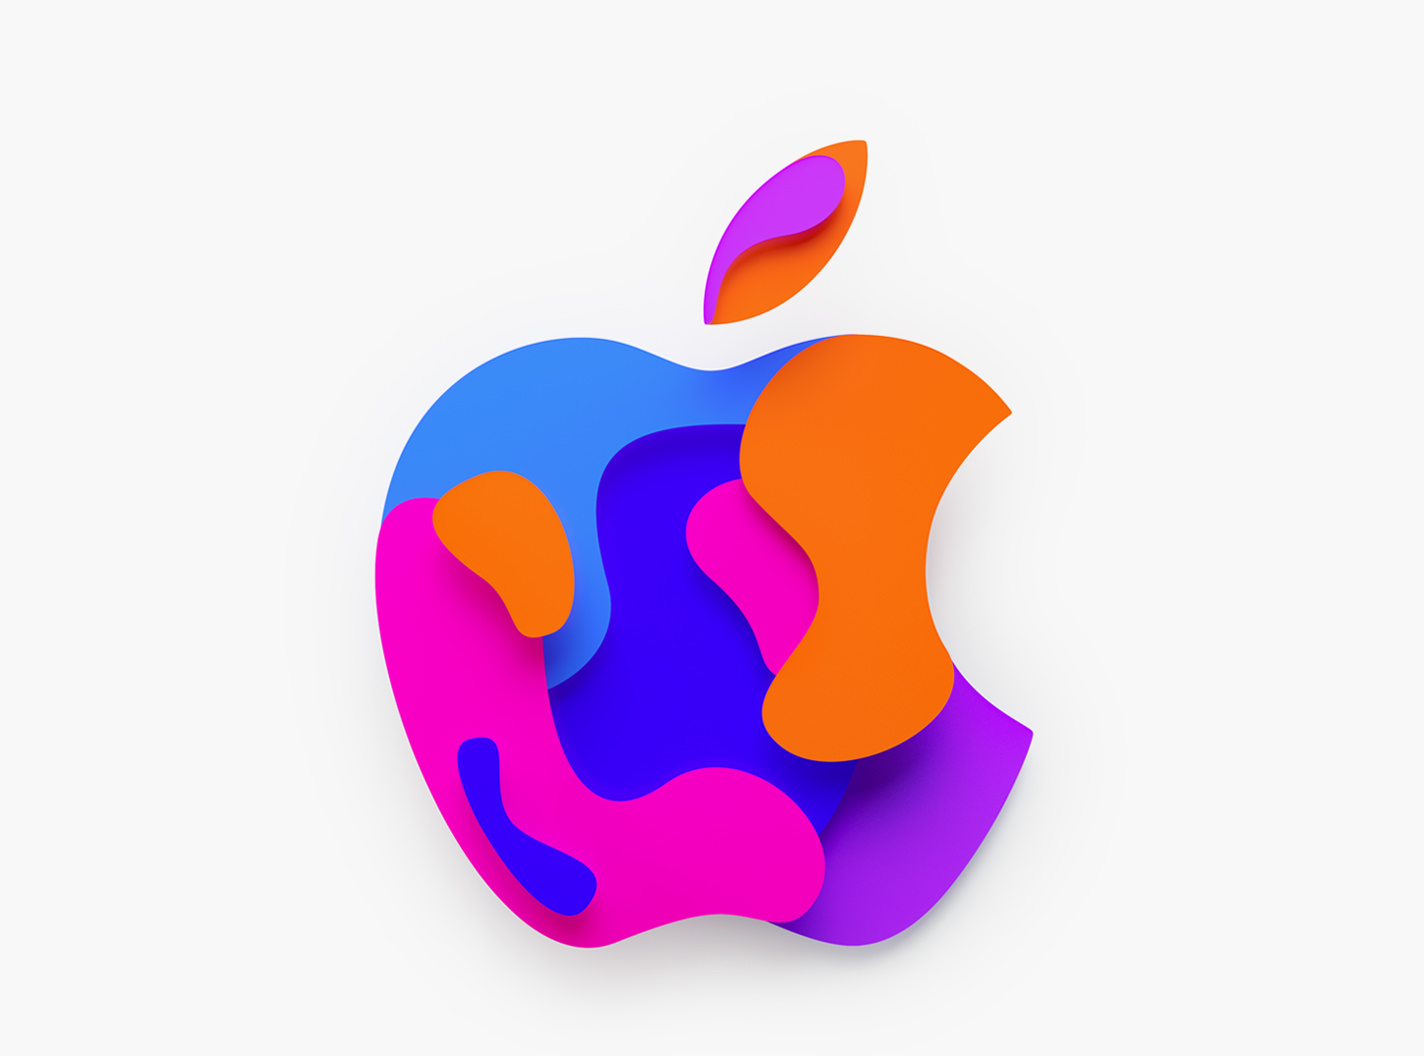 Actualizaciones: Apple lanza iOS 14.4.1, iPadOS 14.4.1, watchOS 7.3.2 y macOS 11.2.3 con mejoras de seguridad